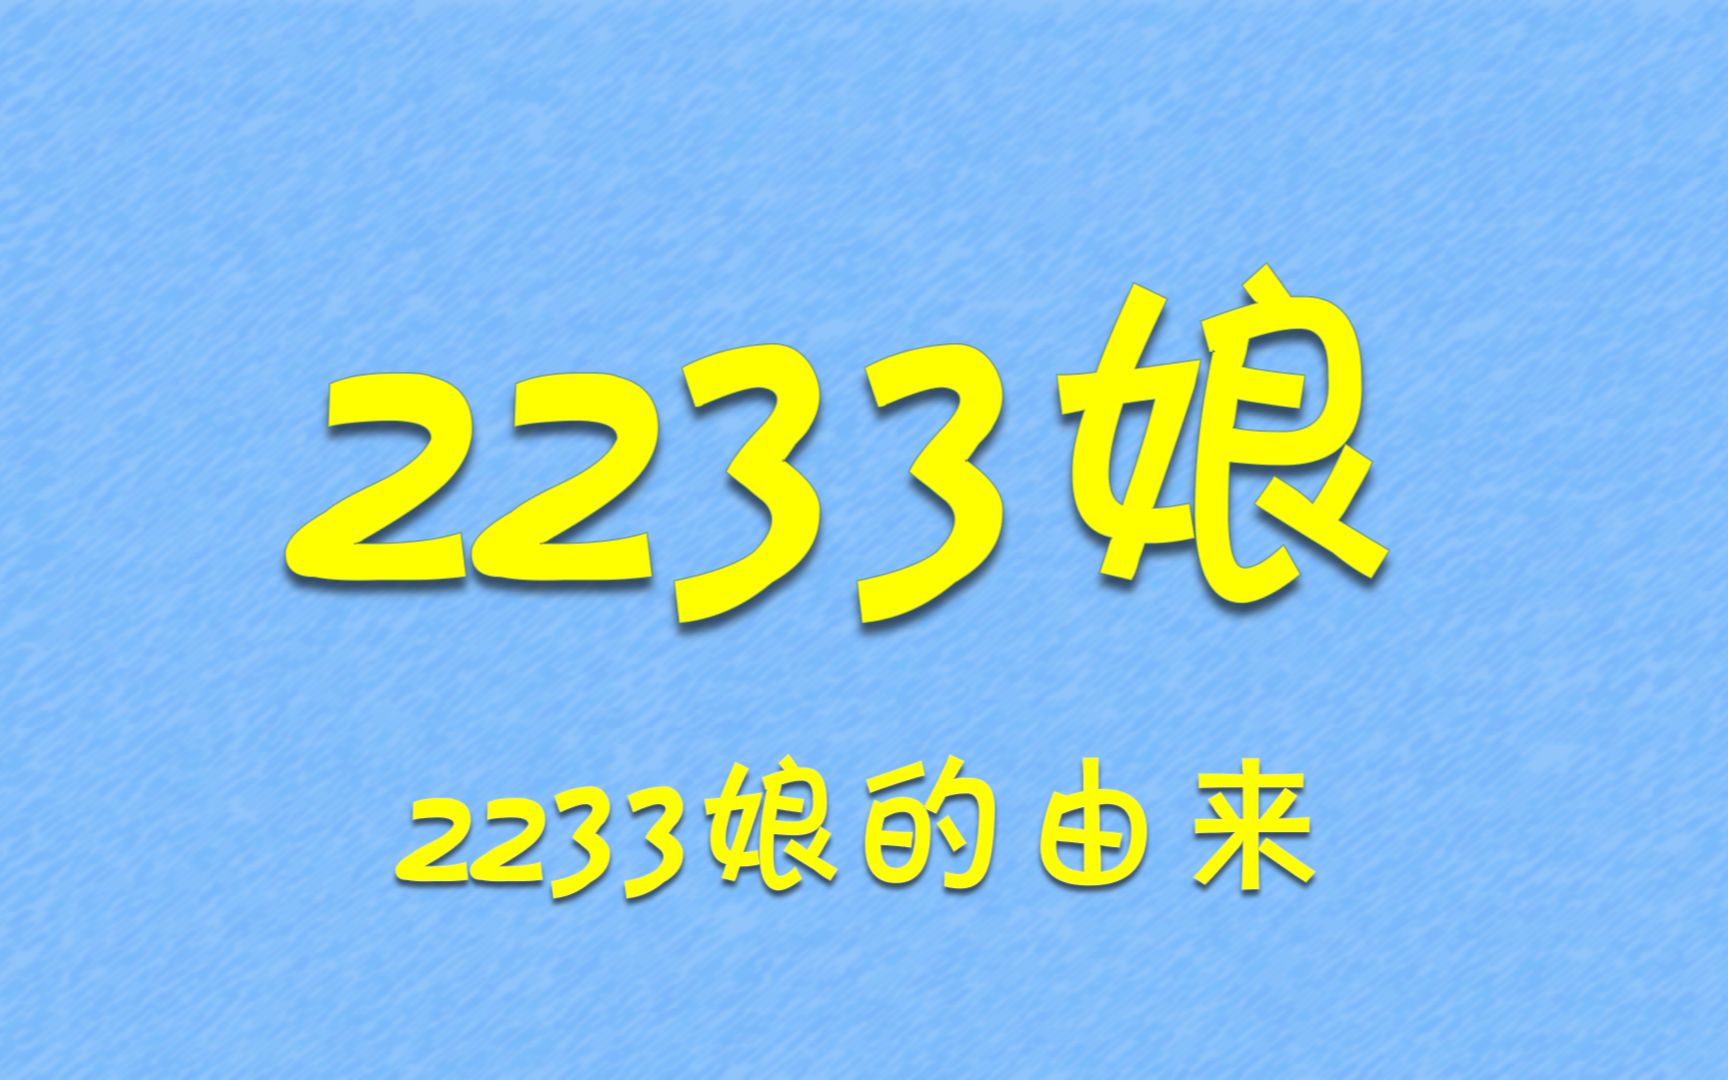 2233生日——2233娘为什么叫2233？